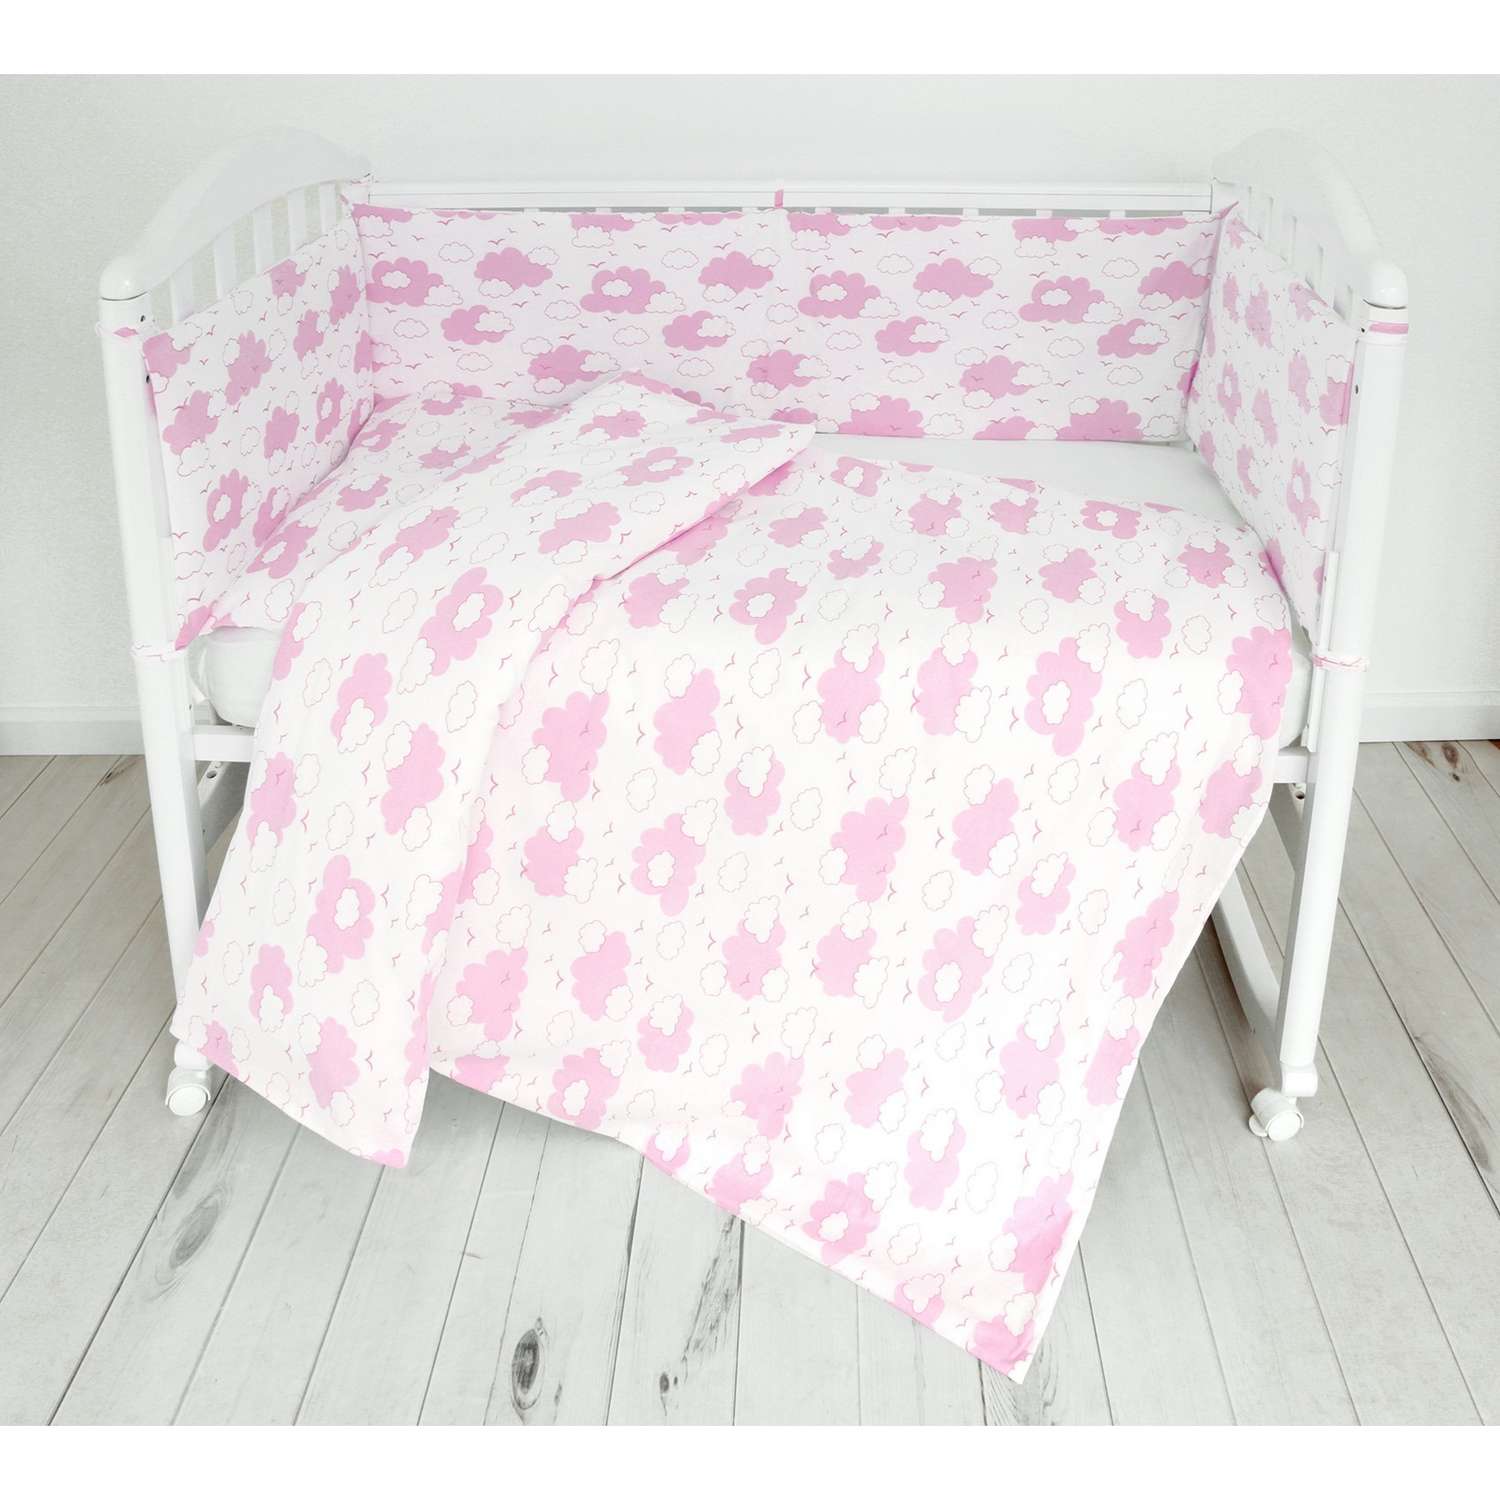 Комплект постельного белья Споки Ноки Облака Розовый 3предмета DMC111/6RO - фото 5